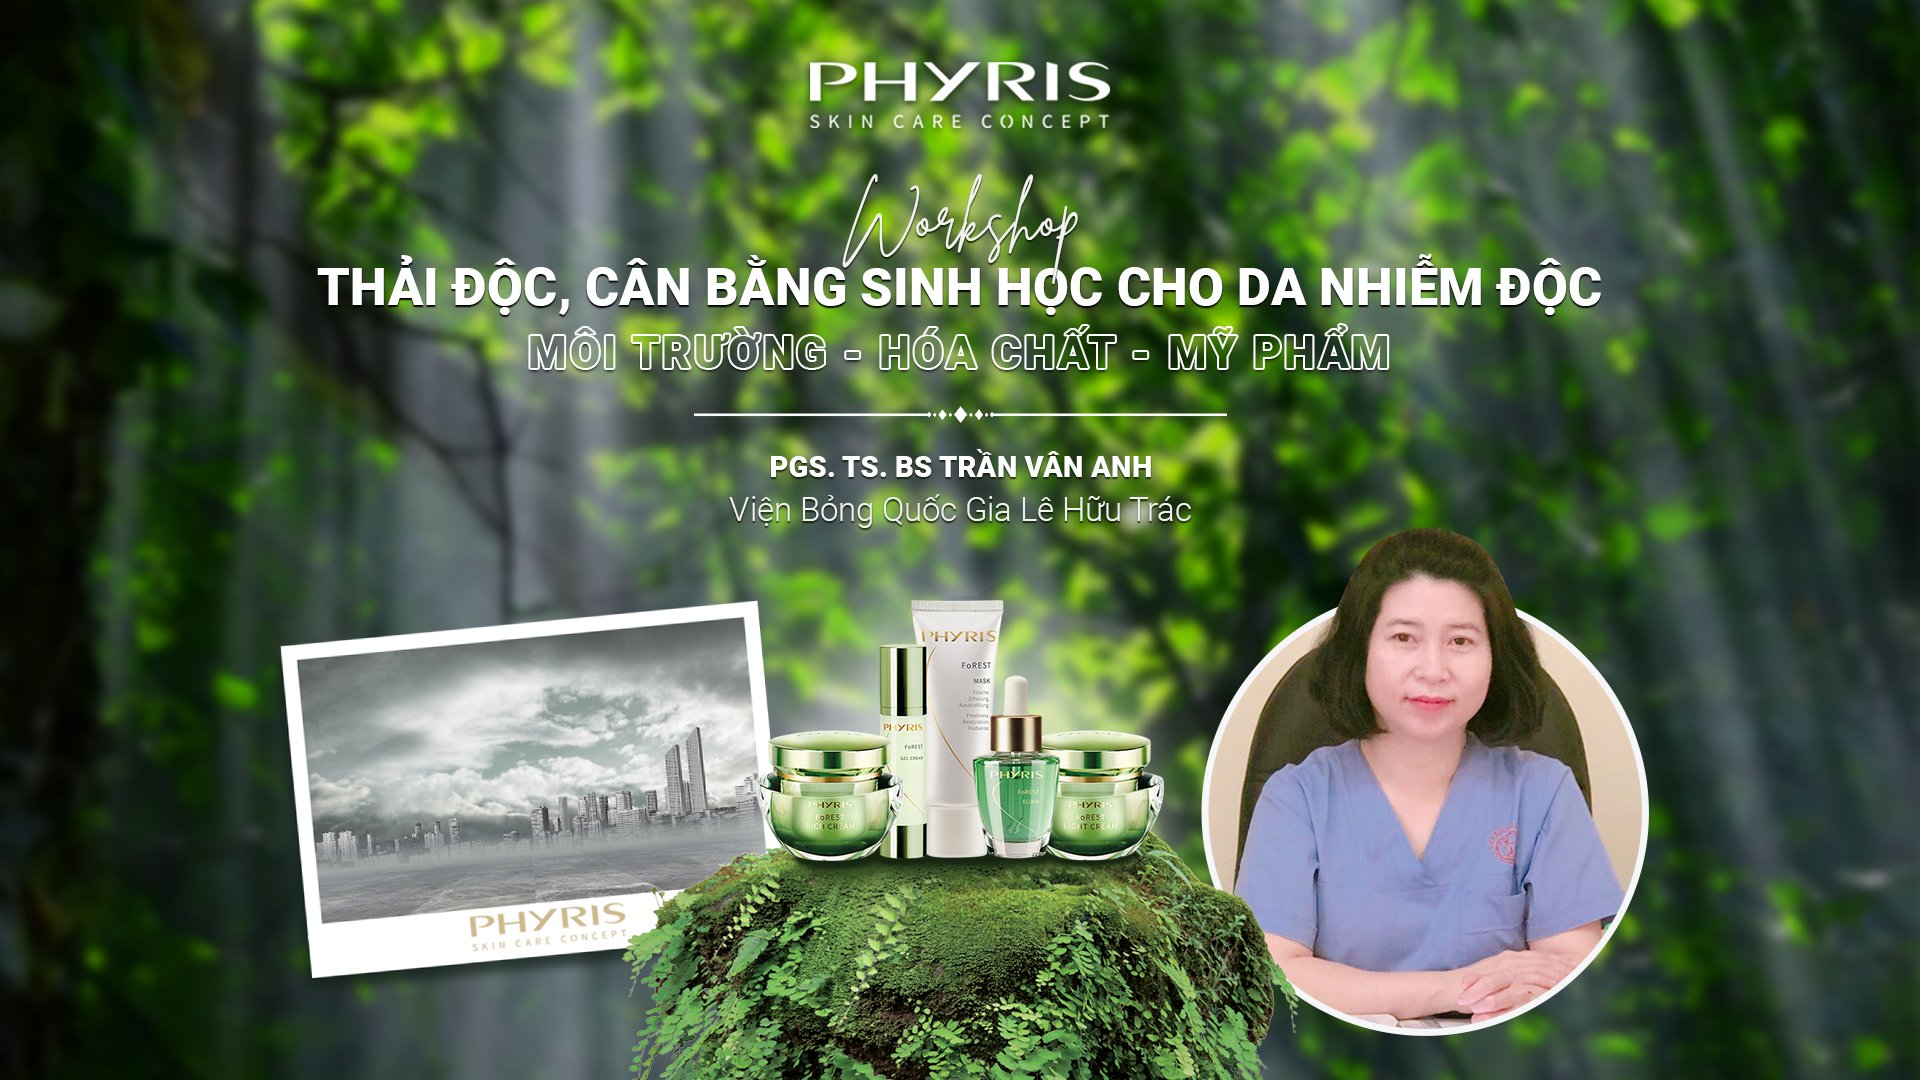 PSG. TS. BS Trần Vân Anh chia sẻ về Phyris và dòng sản phẩm mới Forest